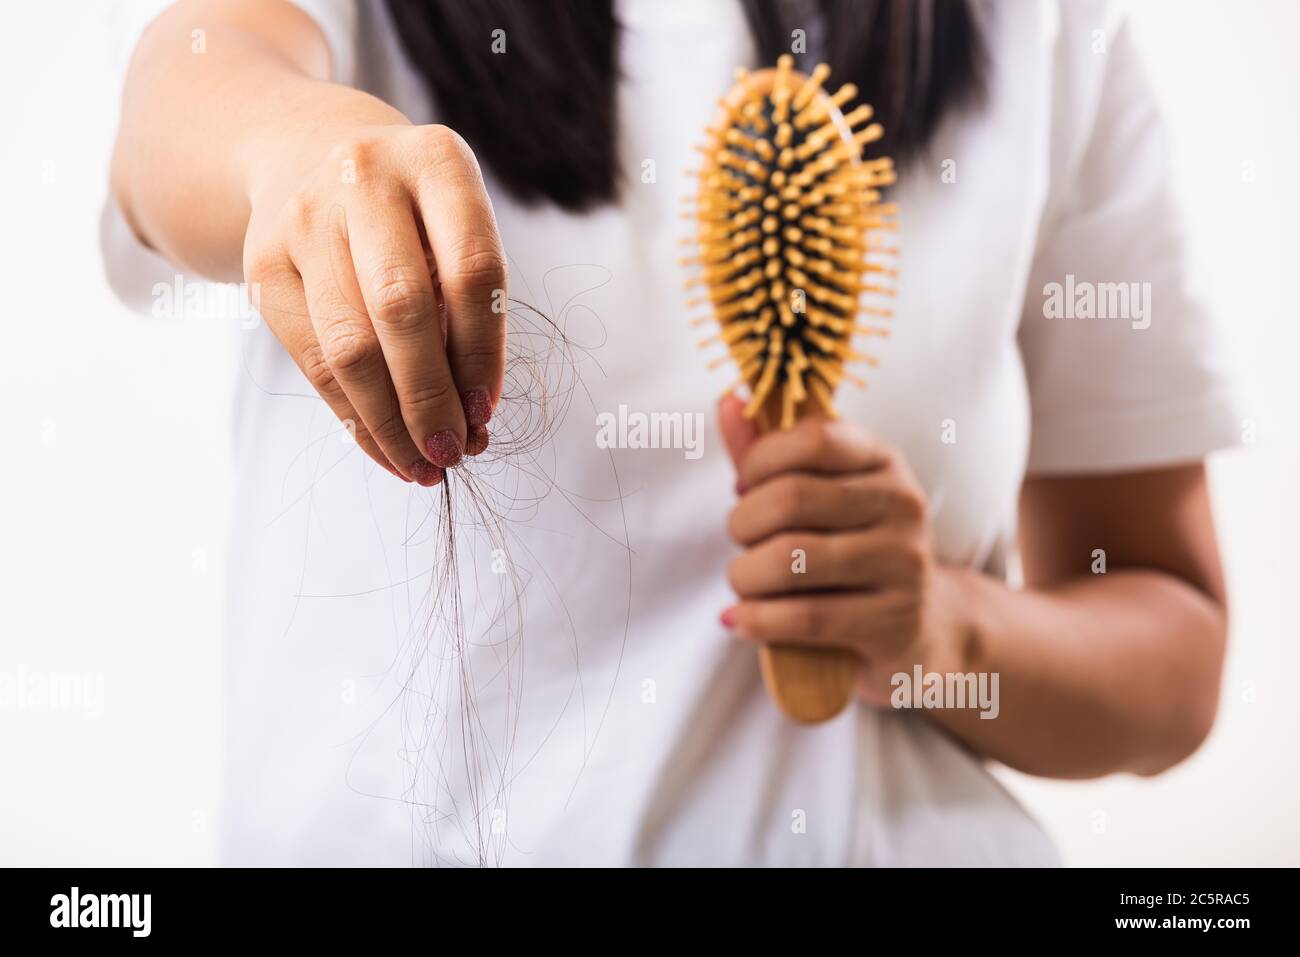 Asiatische Frau unglücklich schwache Haare Problem ihre halten Haarbürste  mit beschädigten langen Verlust Haar in der Kamm Bürste zieht sie Verlust  Haar aus der Bürste, isoliert auf Stockfotografie - Alamy